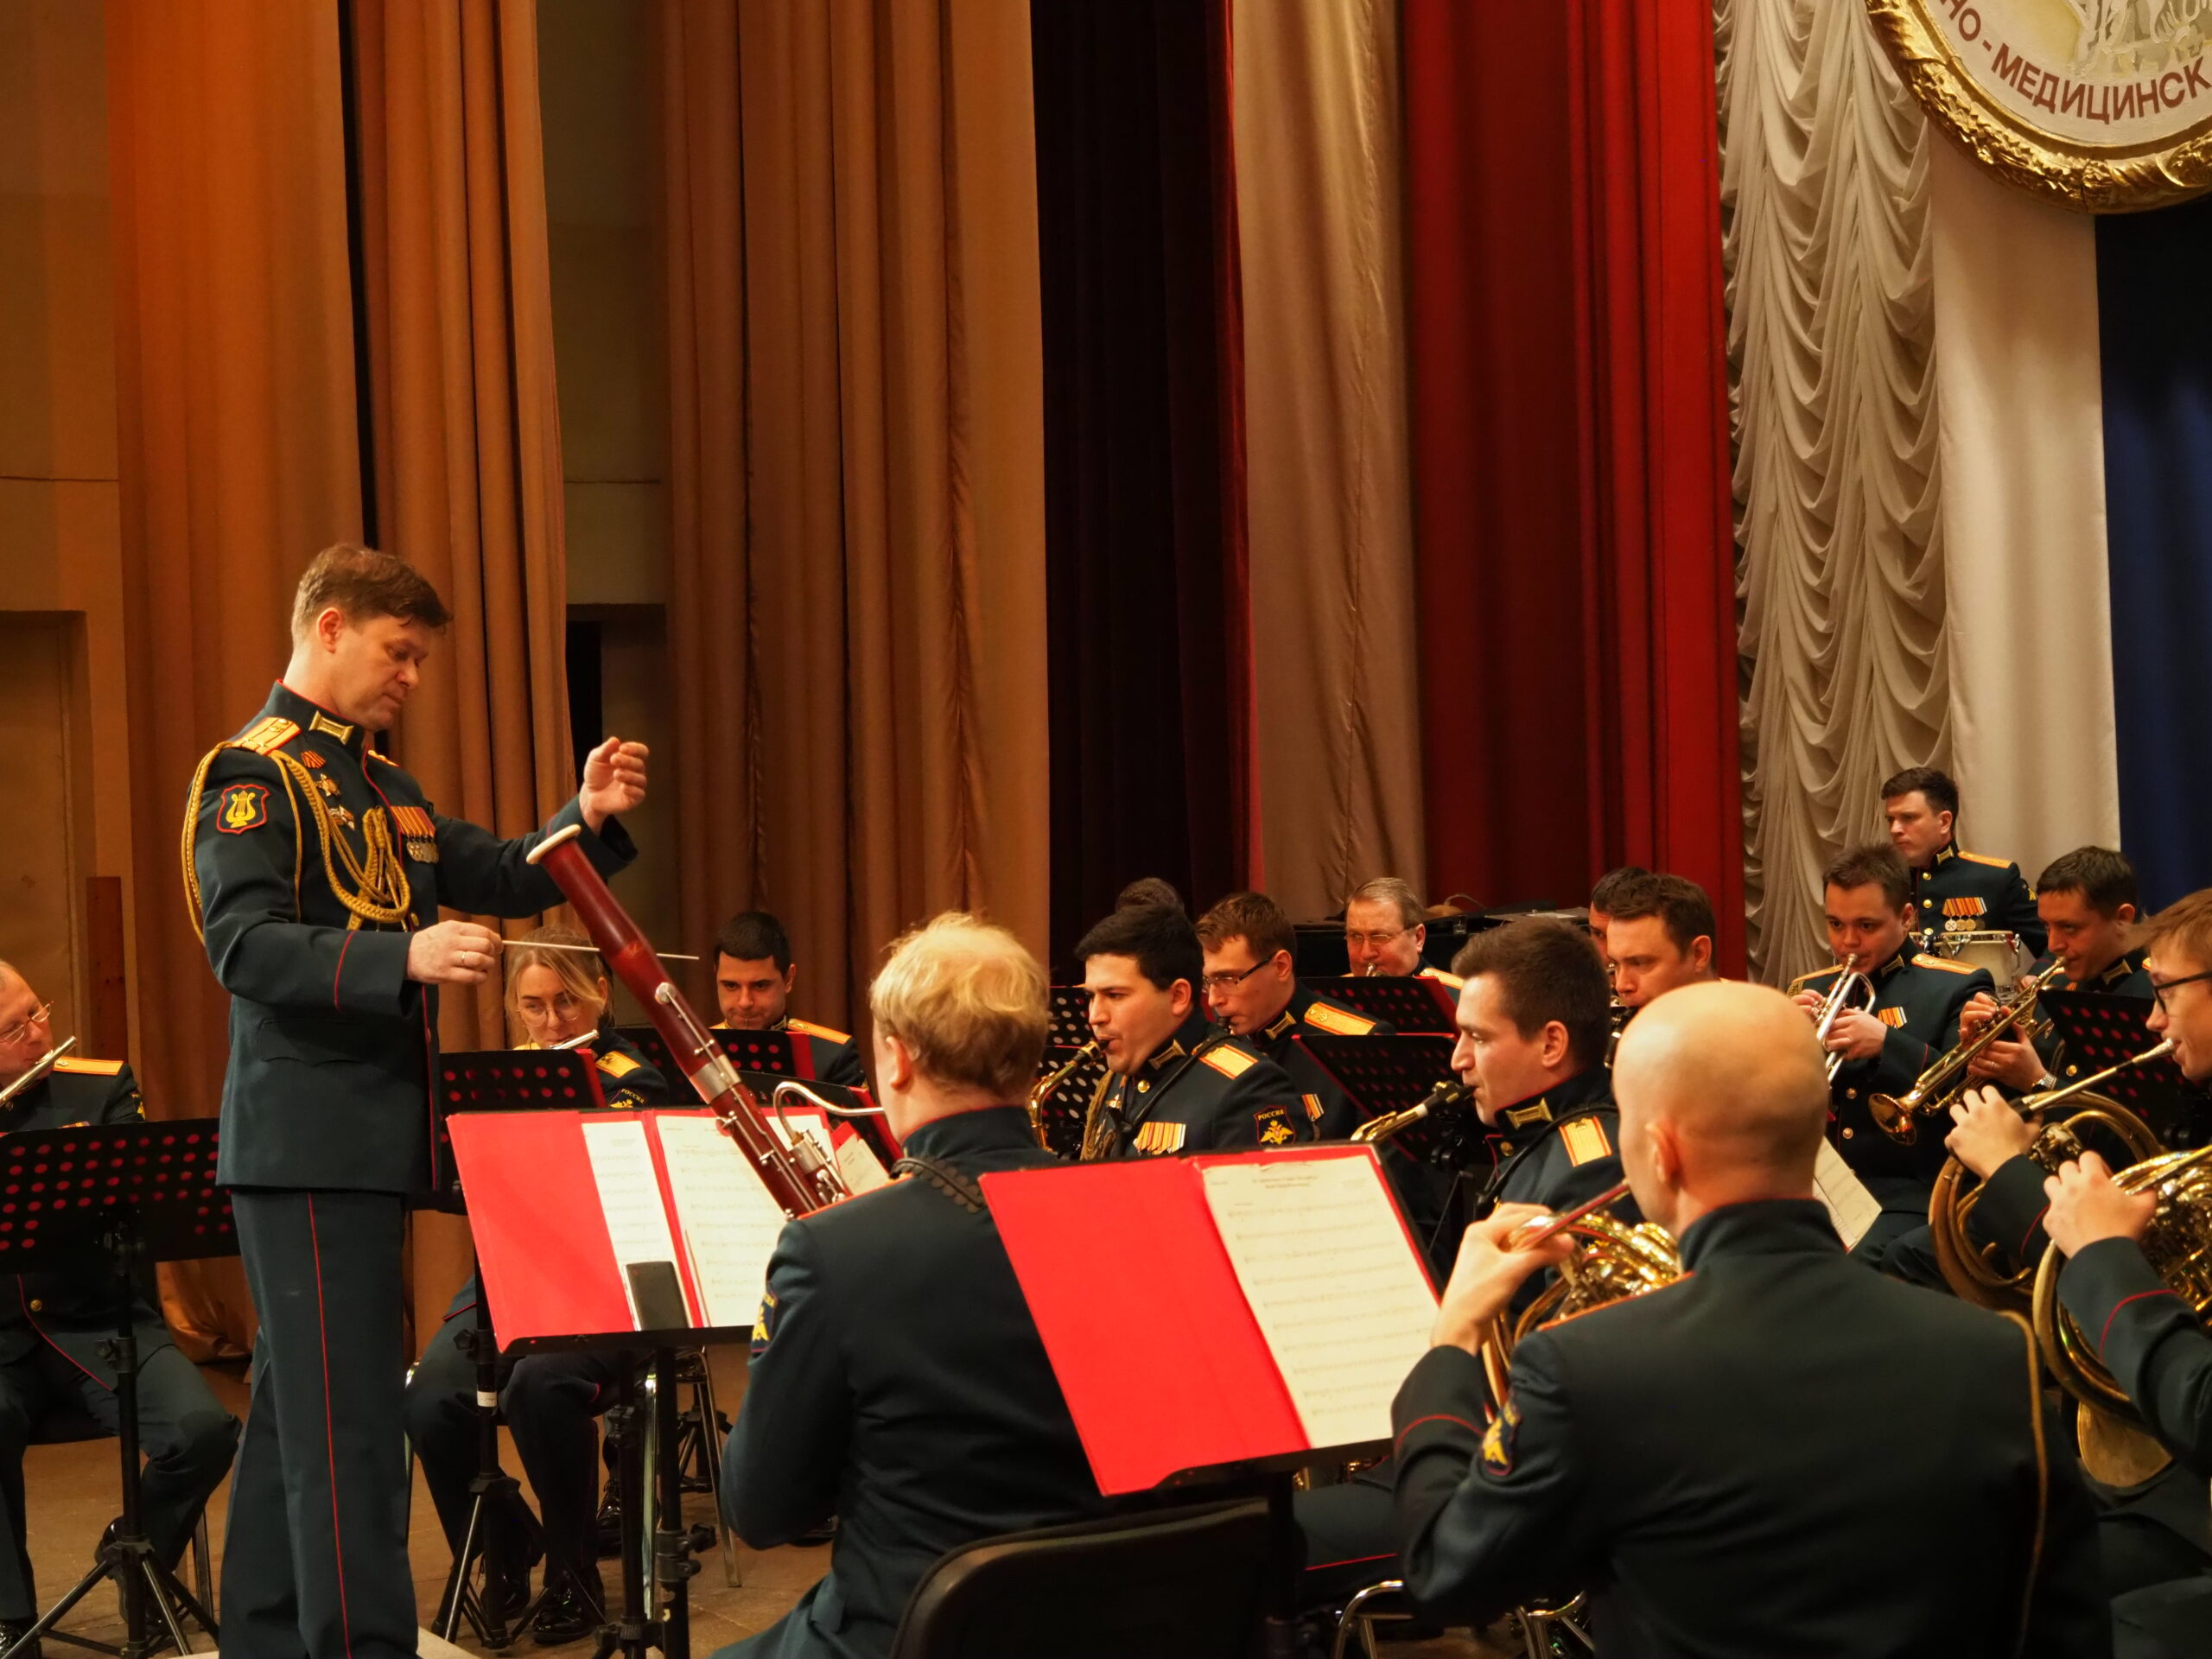 Оркестр Военно-медицинской академии представил специальную музыкальную программу, посвященную созданию Военной оркестровой службы ВС РФ